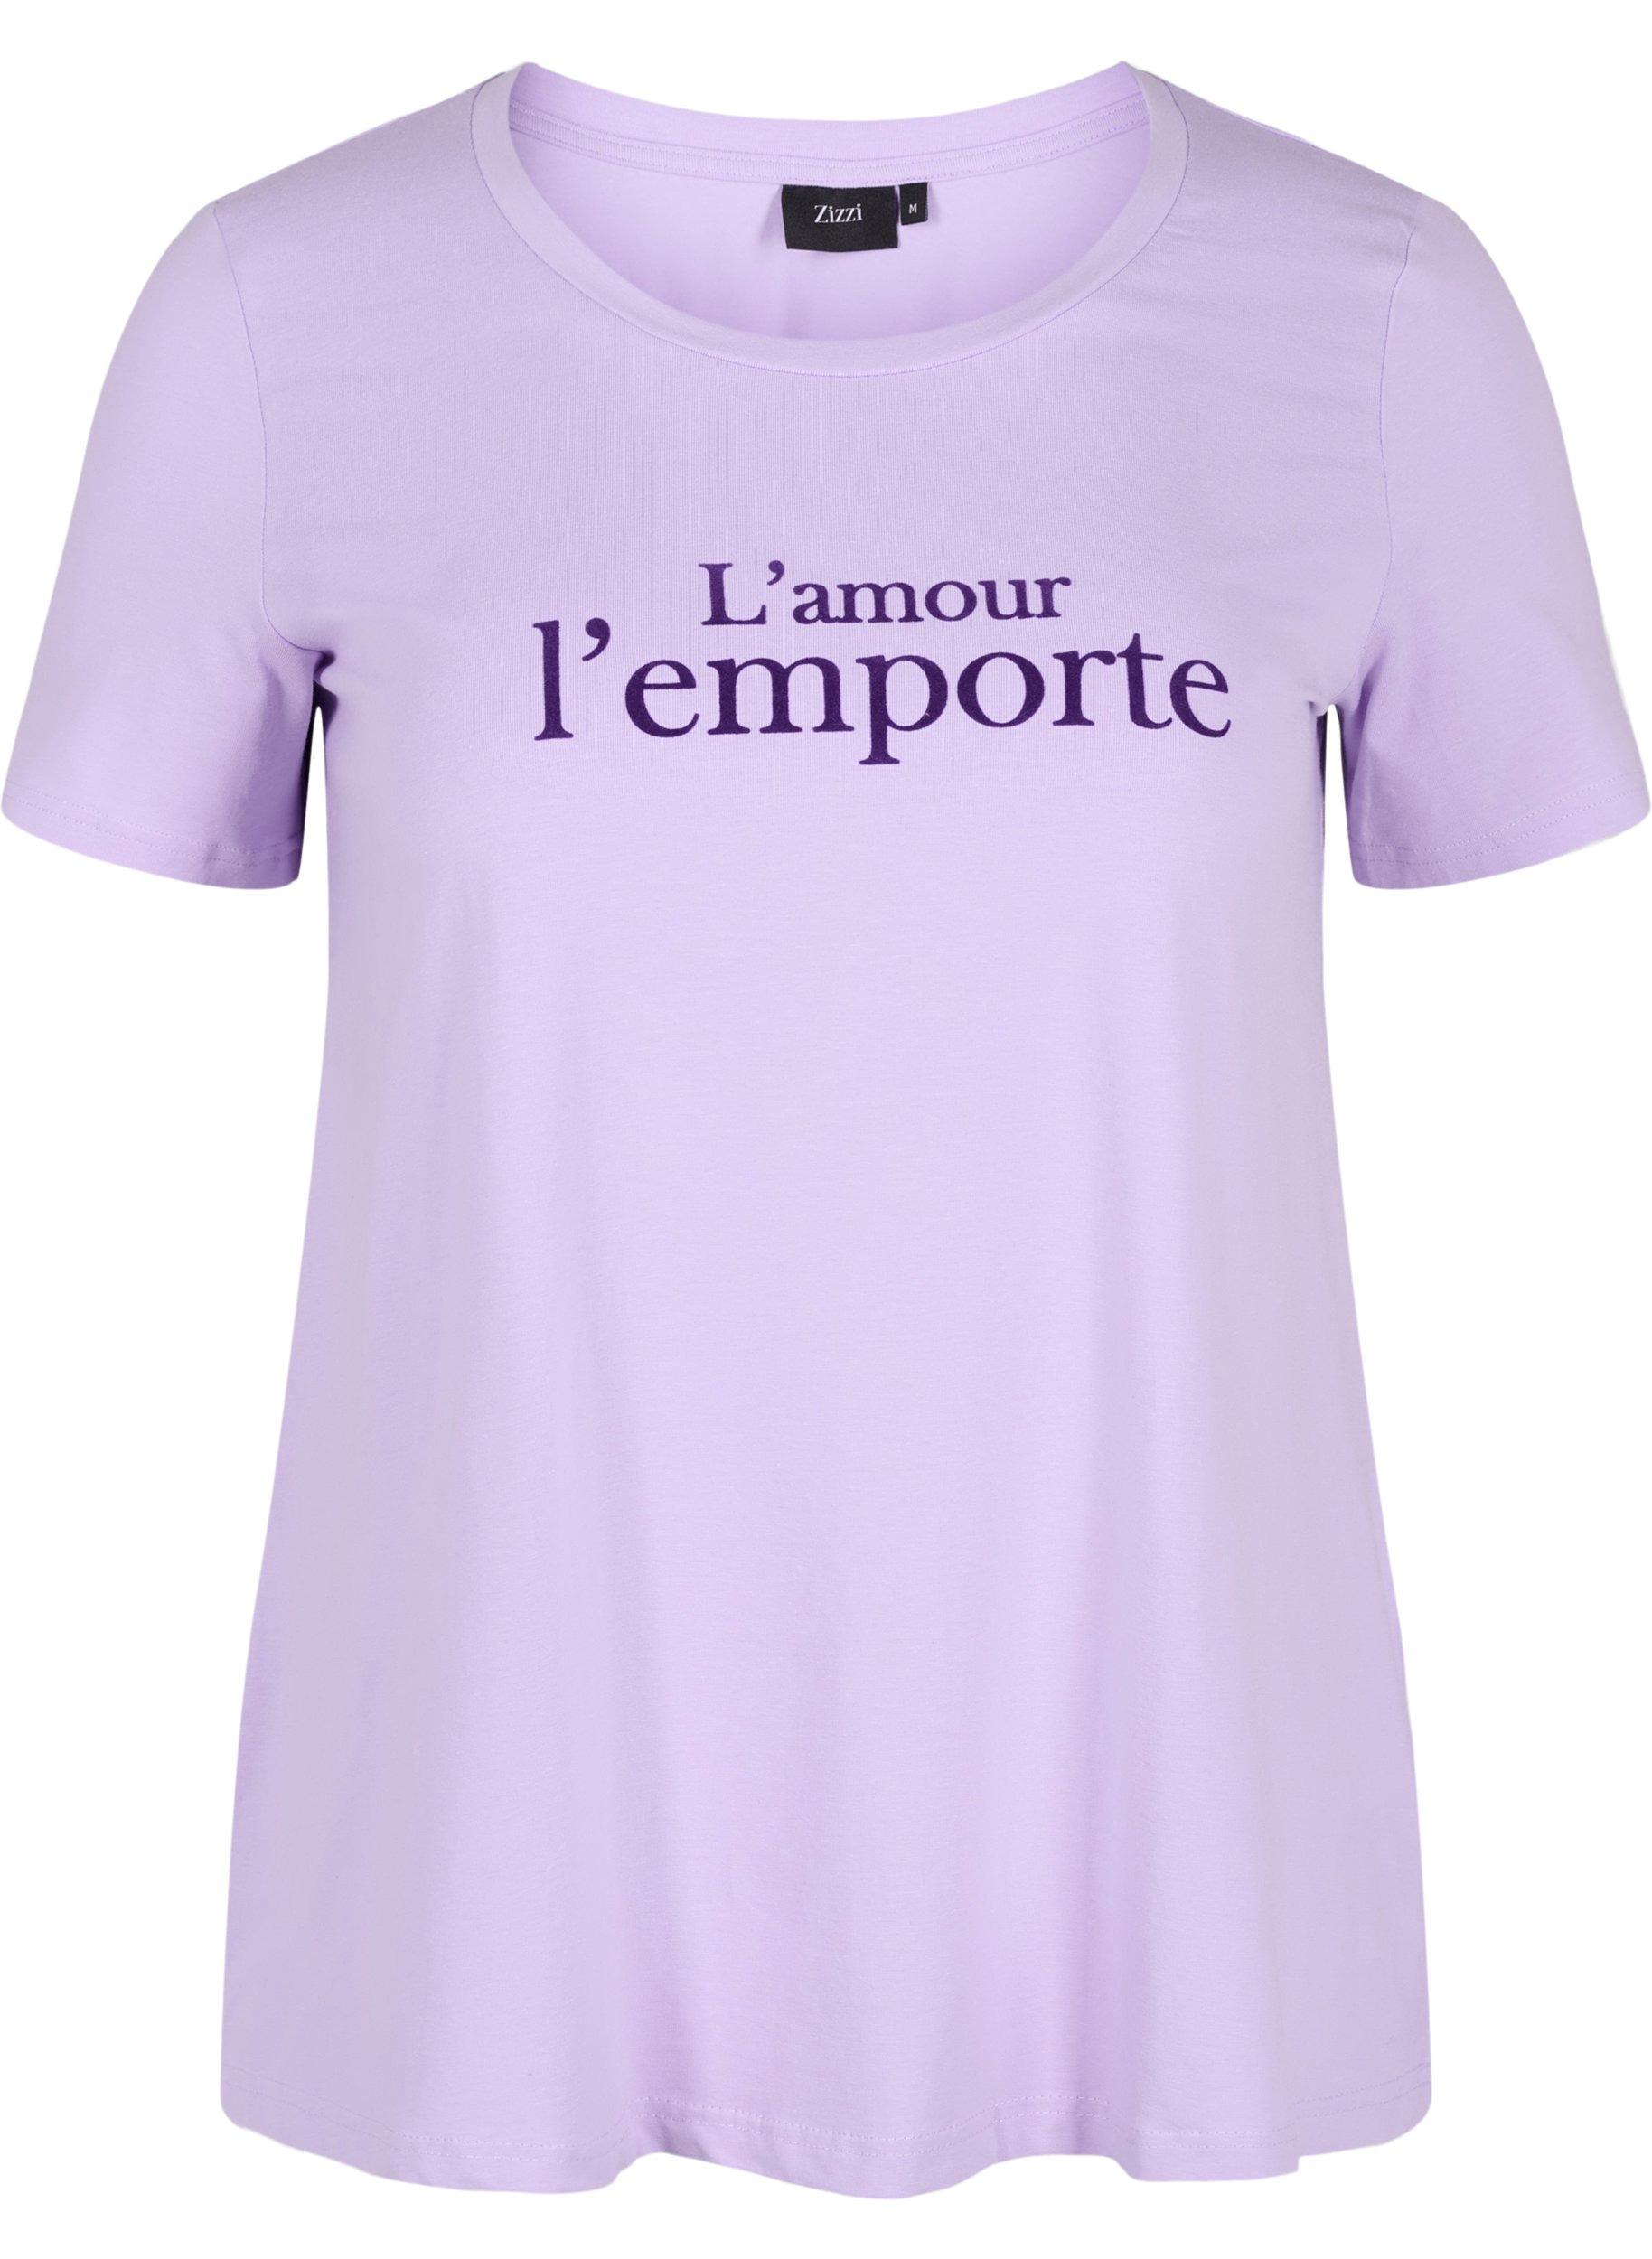 Lyhythihainen puuvillainen t-paita painatuksella,  Lavender LAMOUR, Packshot